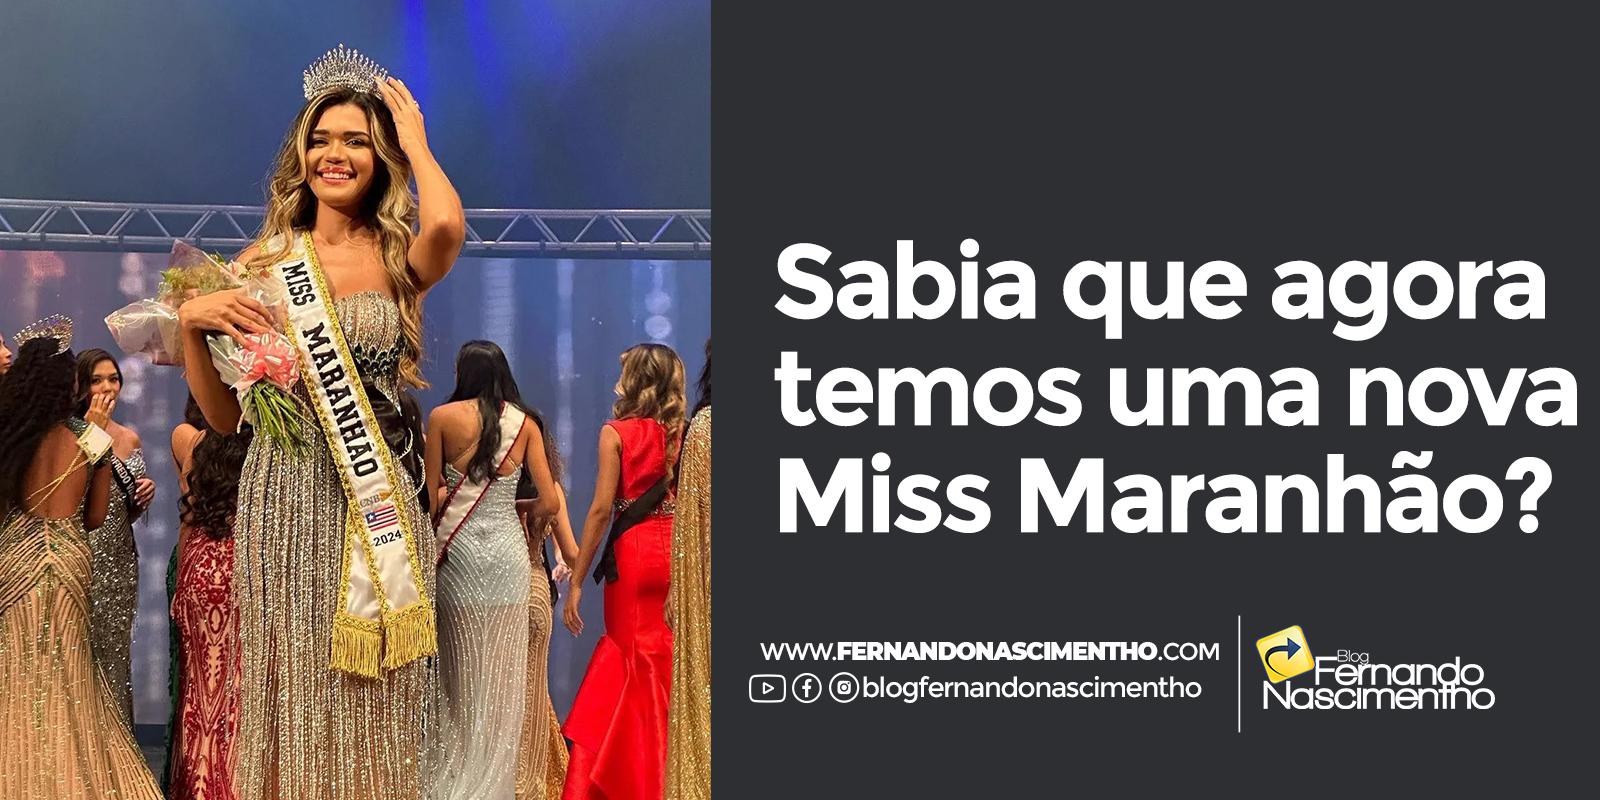 Cirurgiã-dentista de 25 anos é eleita Miss Maranhão